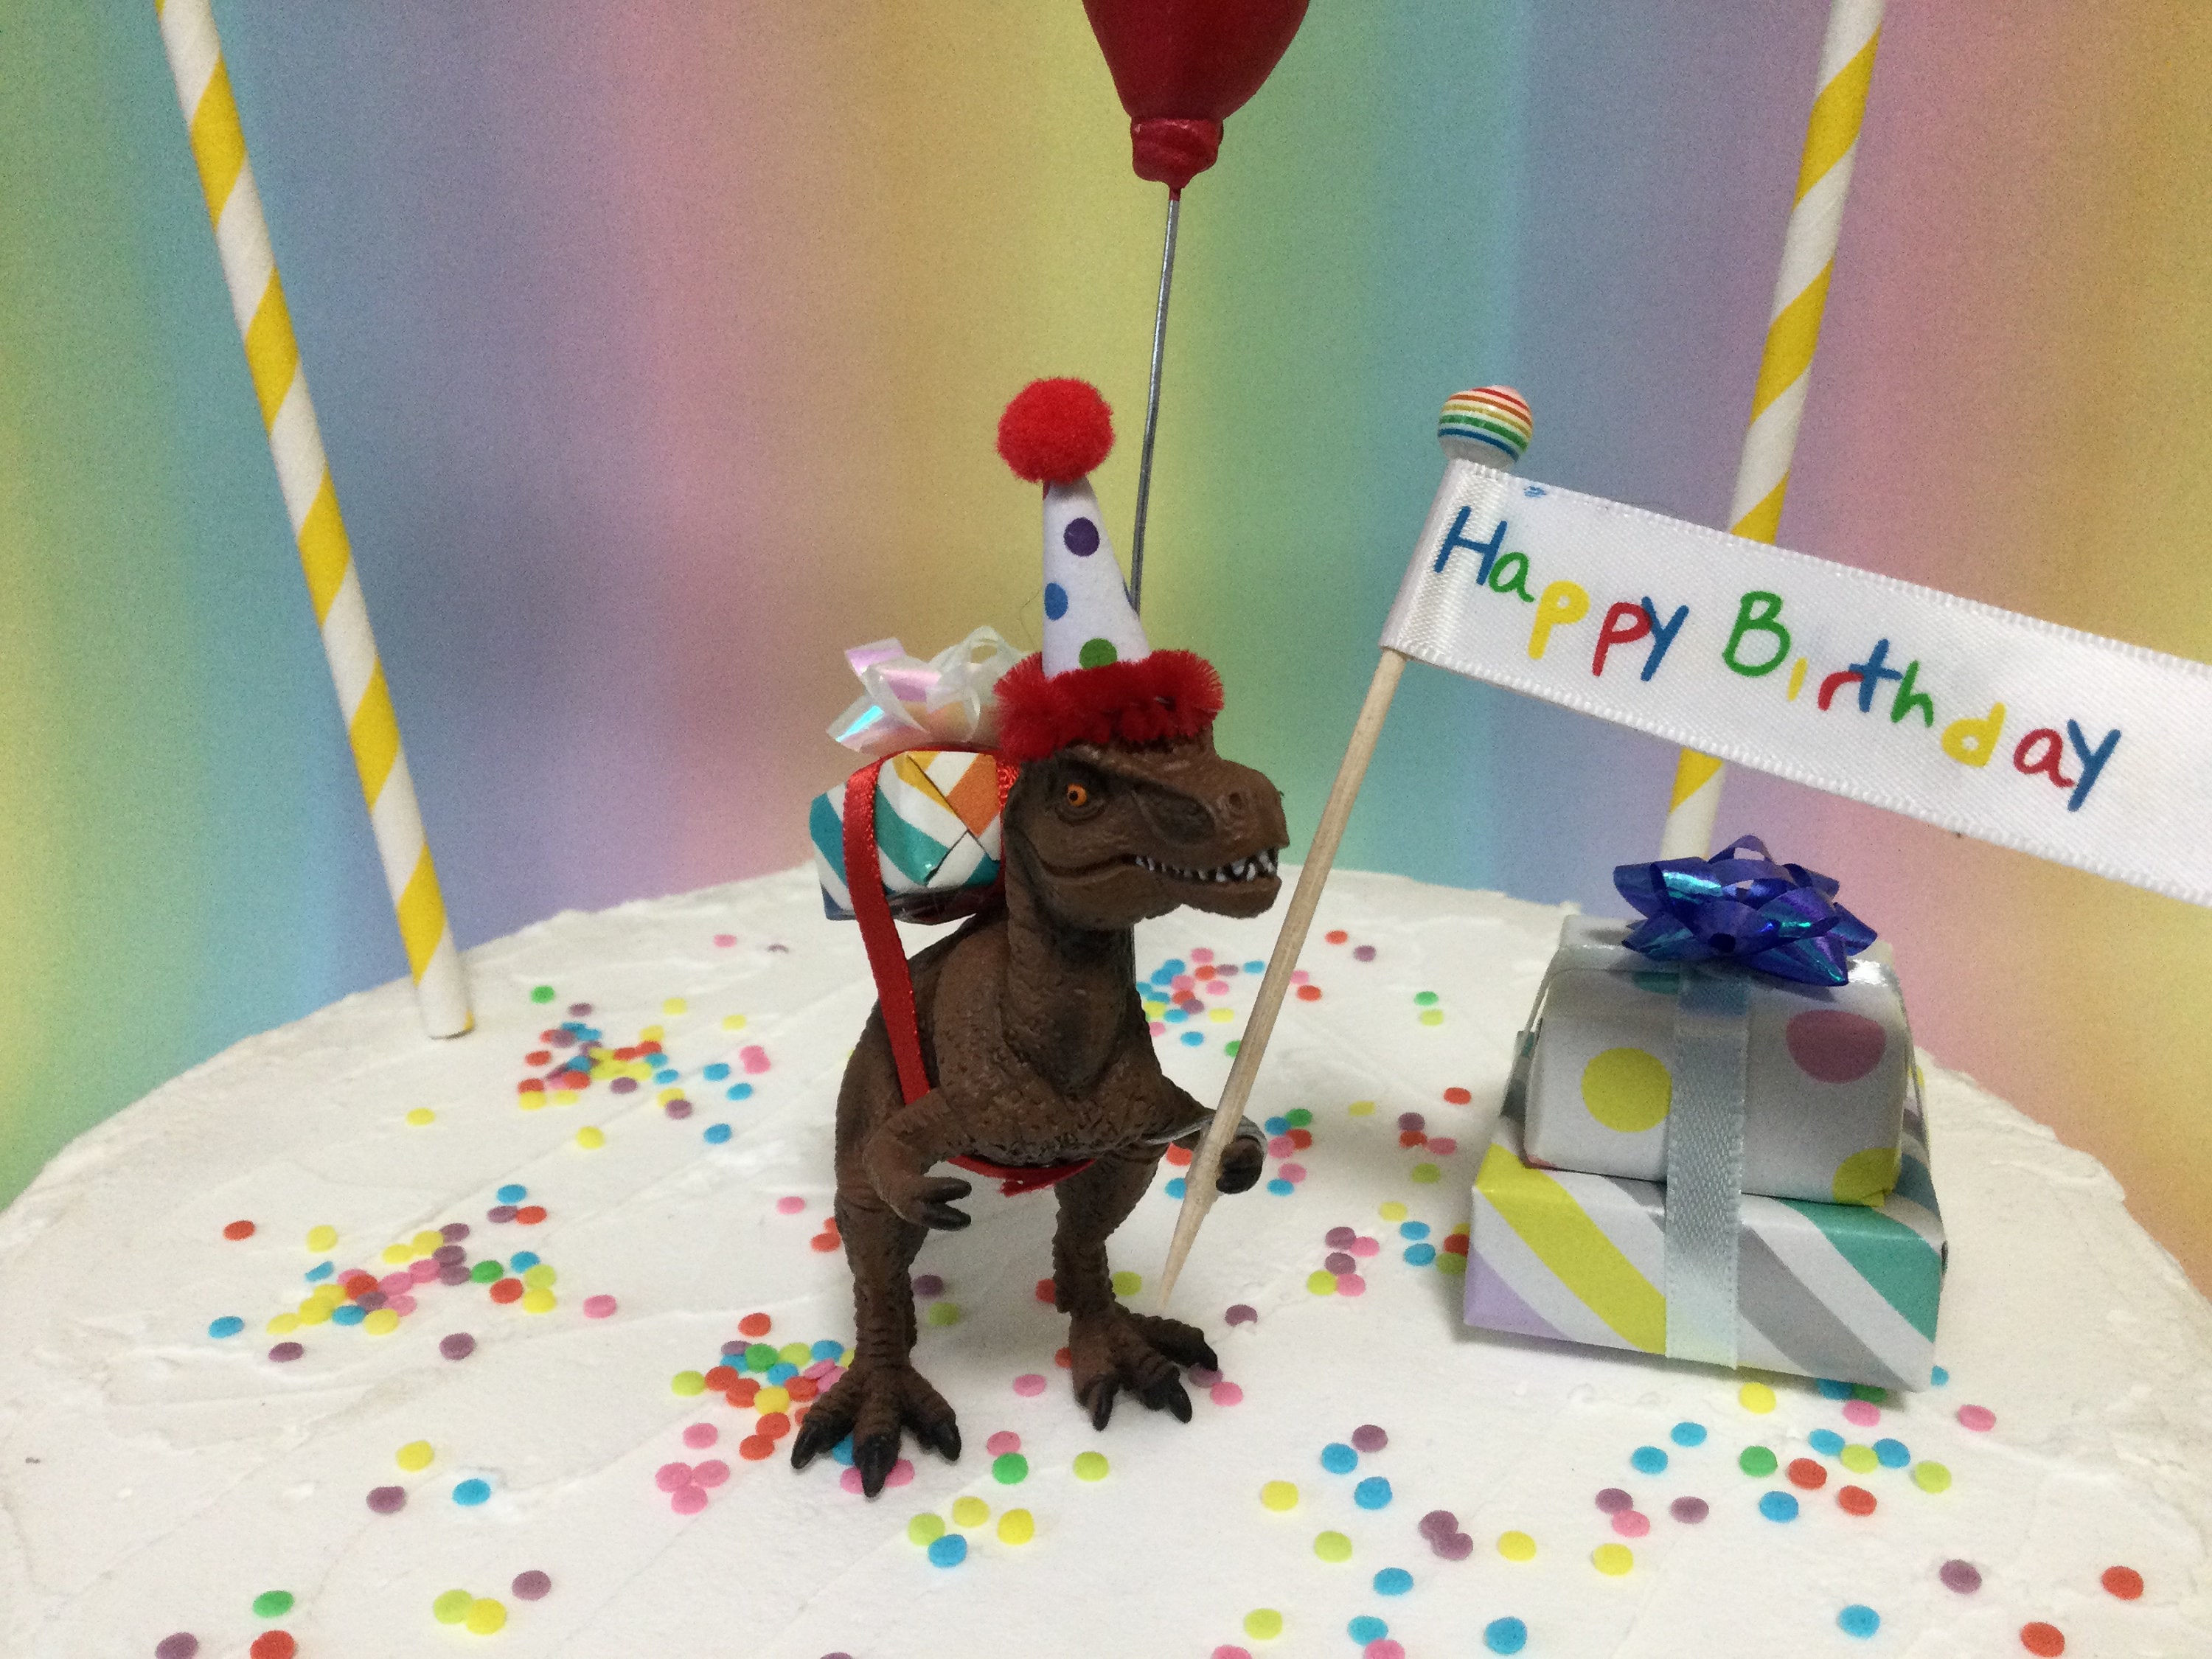 Dinosaur Cake Toppers, Dinosaur Birthday Party Decorations, Dino